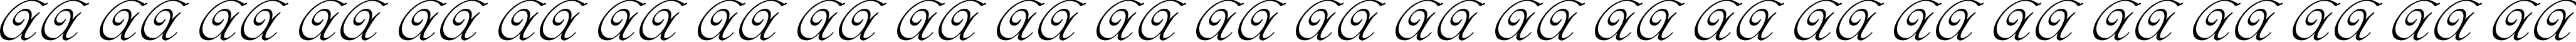 Пример написания английского алфавита шрифтом Elzevir